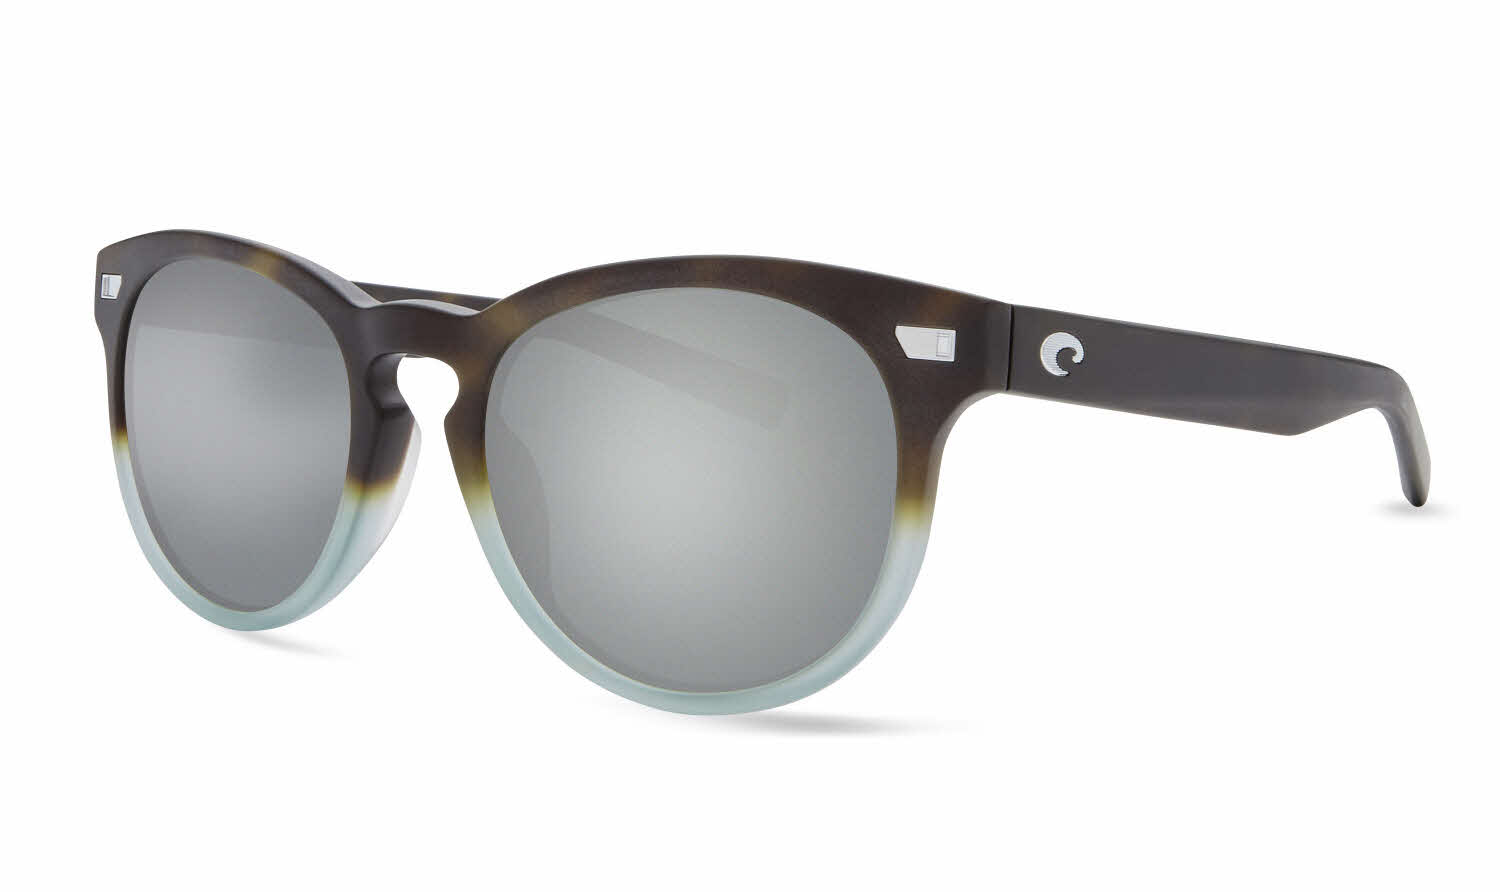 Costa Del Mar - Del Mar Collection Sunglasses in Brown